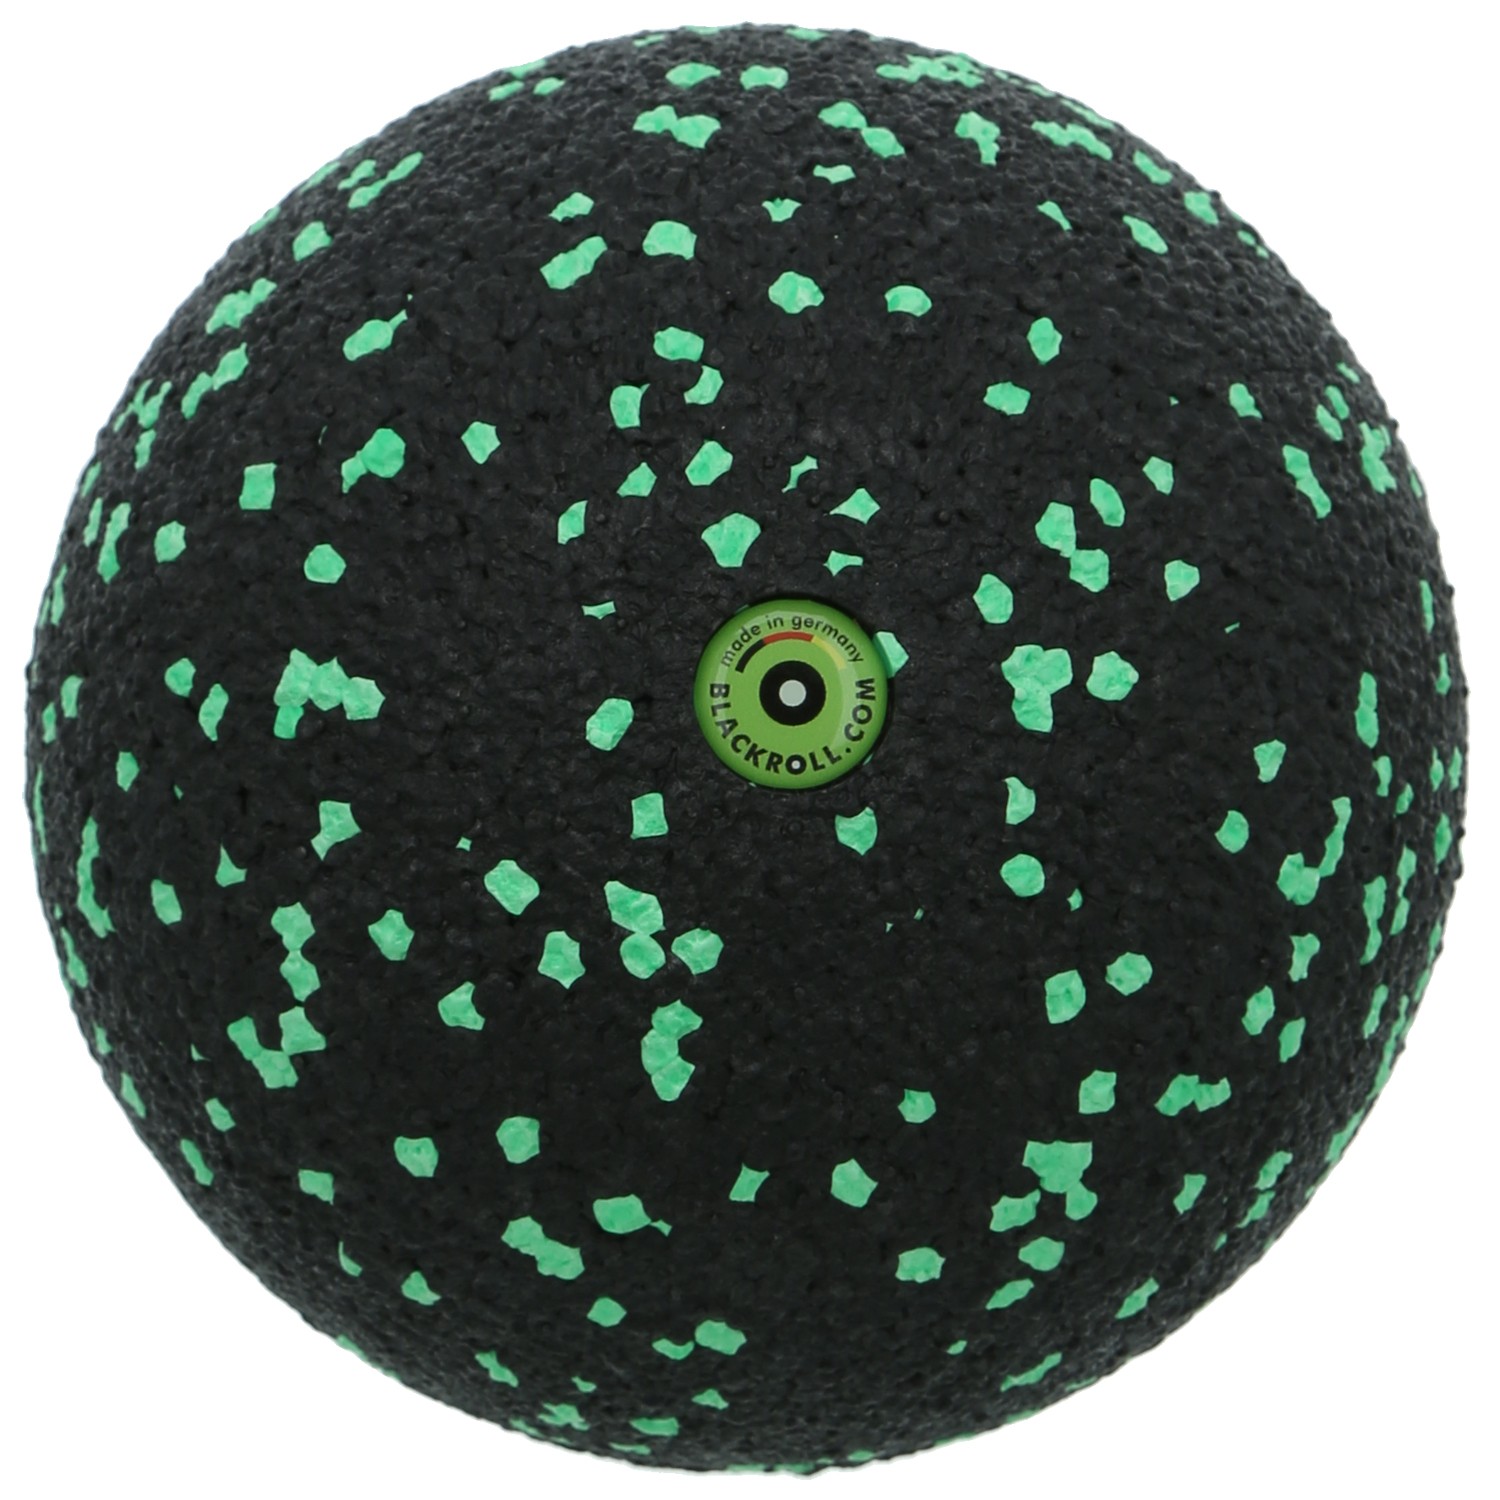 Blackroll Ball 12 cm schwarz/grün